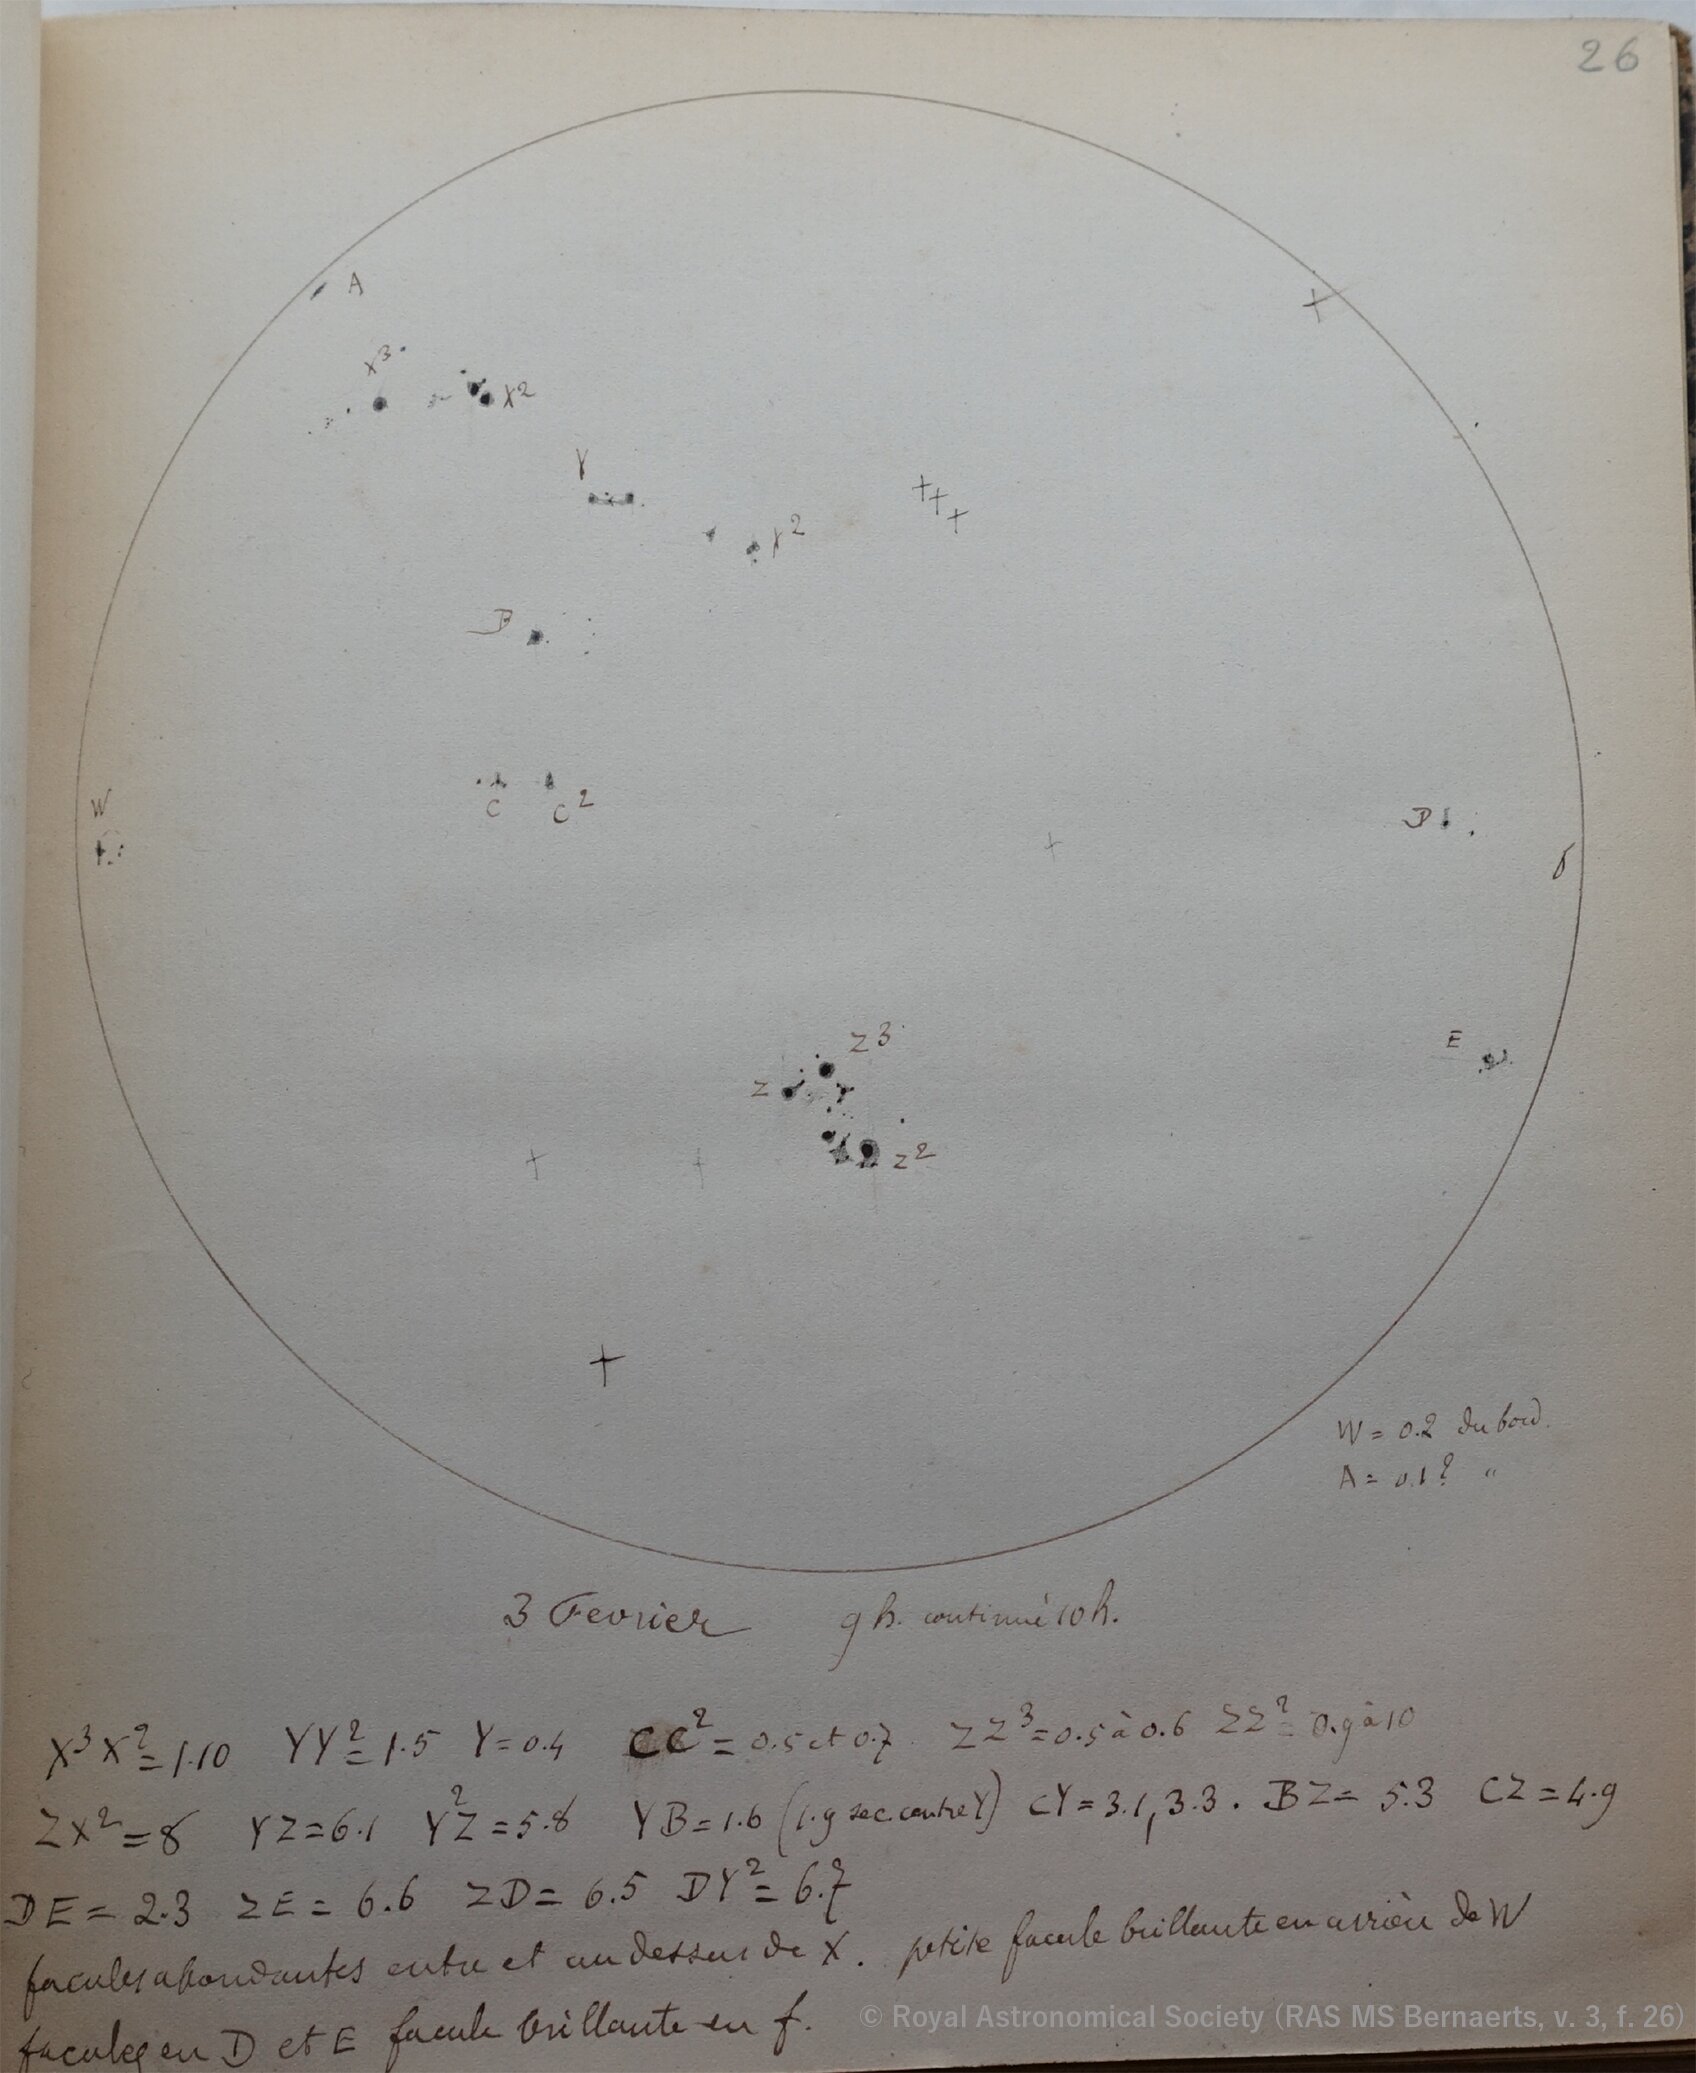 Dibujo de una mancha solar belga que muestra la superficie solar el 3 de febrero de 1872 (RAS MS Bernaerts, v. 3, f. 26; cortesía de la Royal Astronomical Society). Crédito: ©︎ Royal Astronomical Society (RAS MS Bernaerts, v. 3, f. 26)